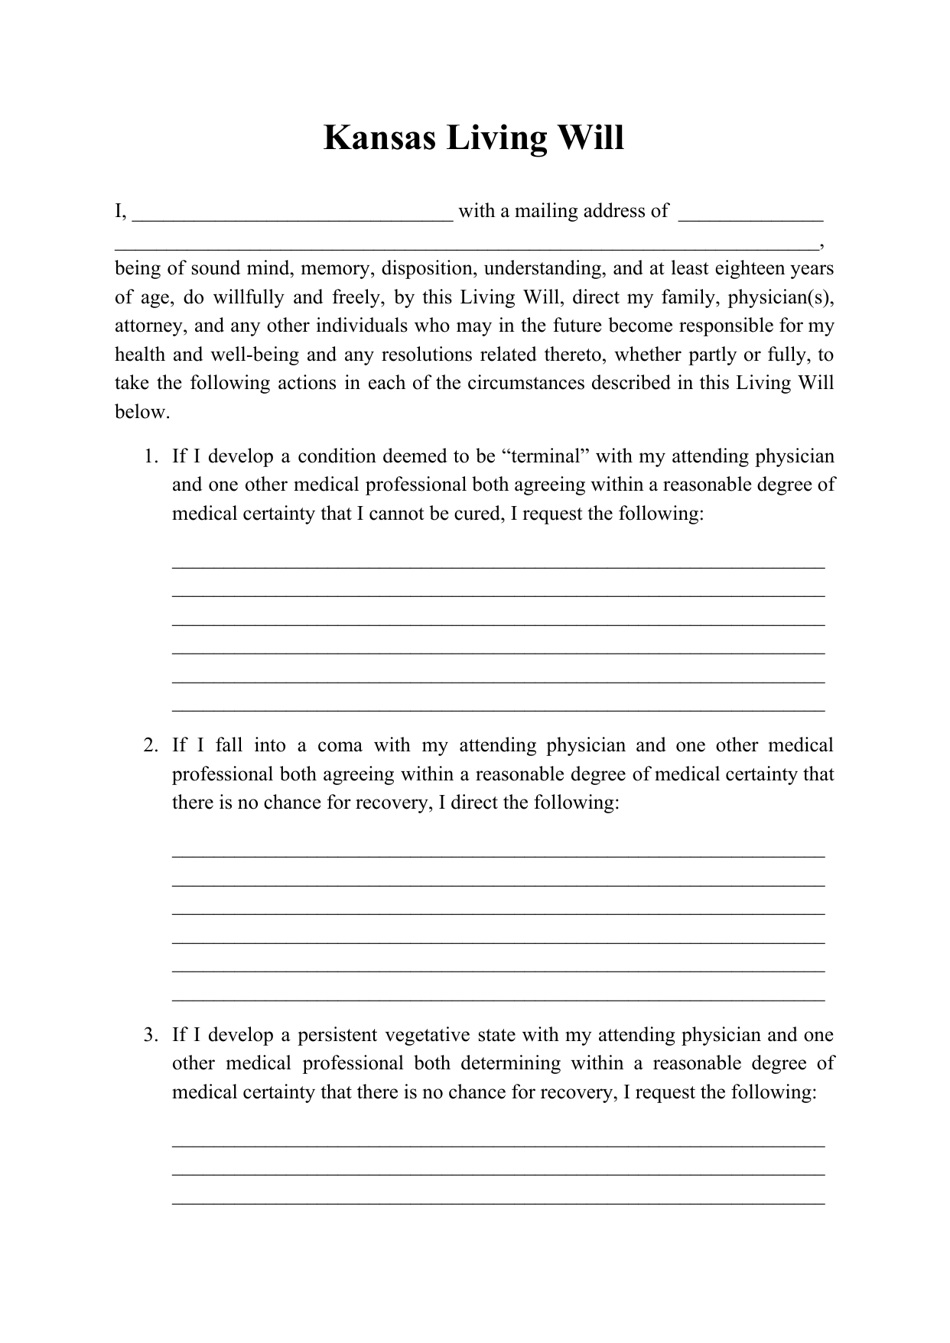 kansas-living-will-form-download-printable-pdf-templateroller-gambaran